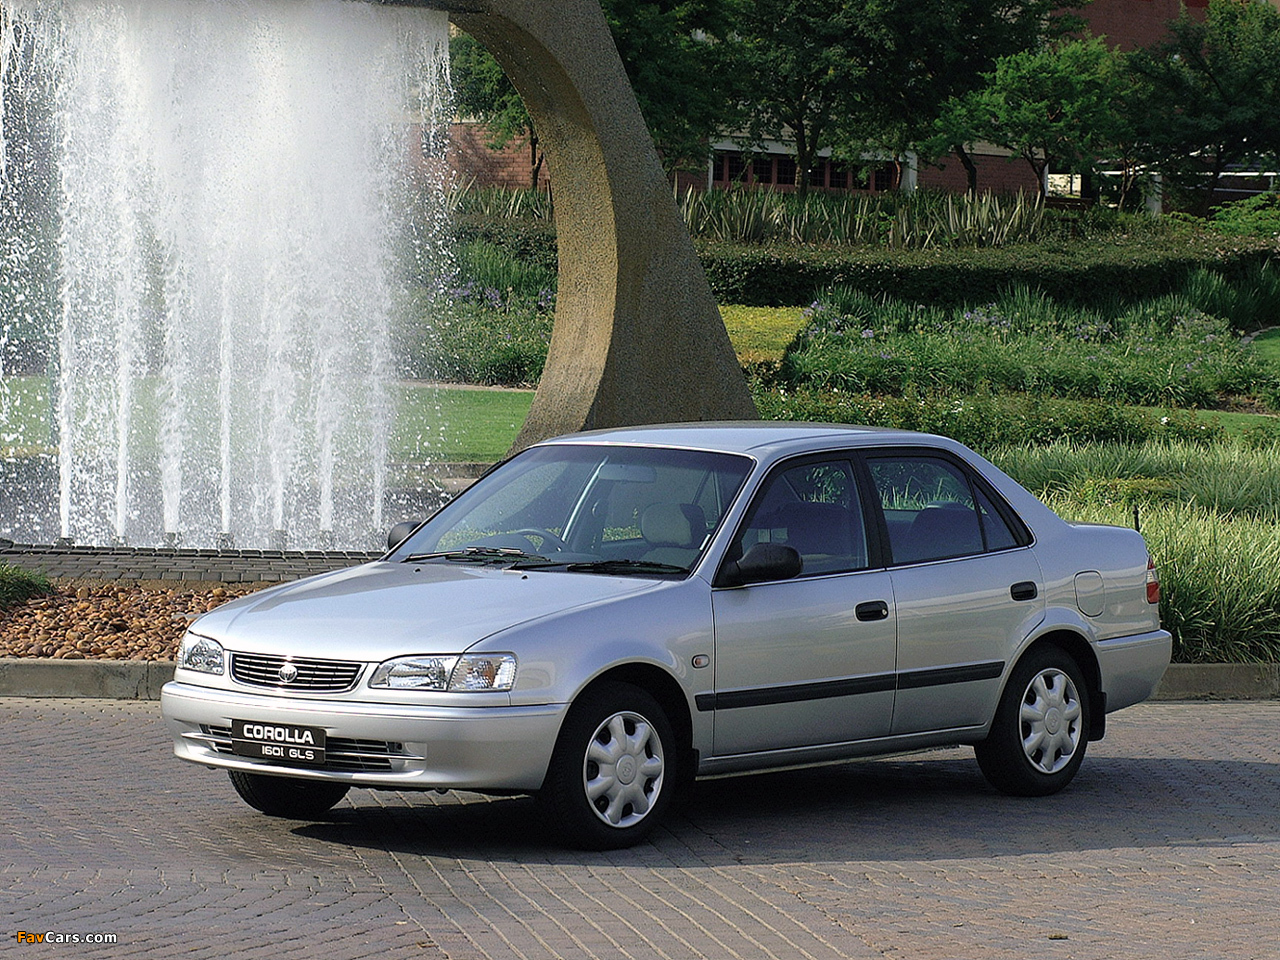 Corolla 2000 года. Тойота Королла 8 (1995-2000). Тойота Королла 1997 2000. Toyota Corolla 2000 седан. Тойота Королла 8 поколение е110.